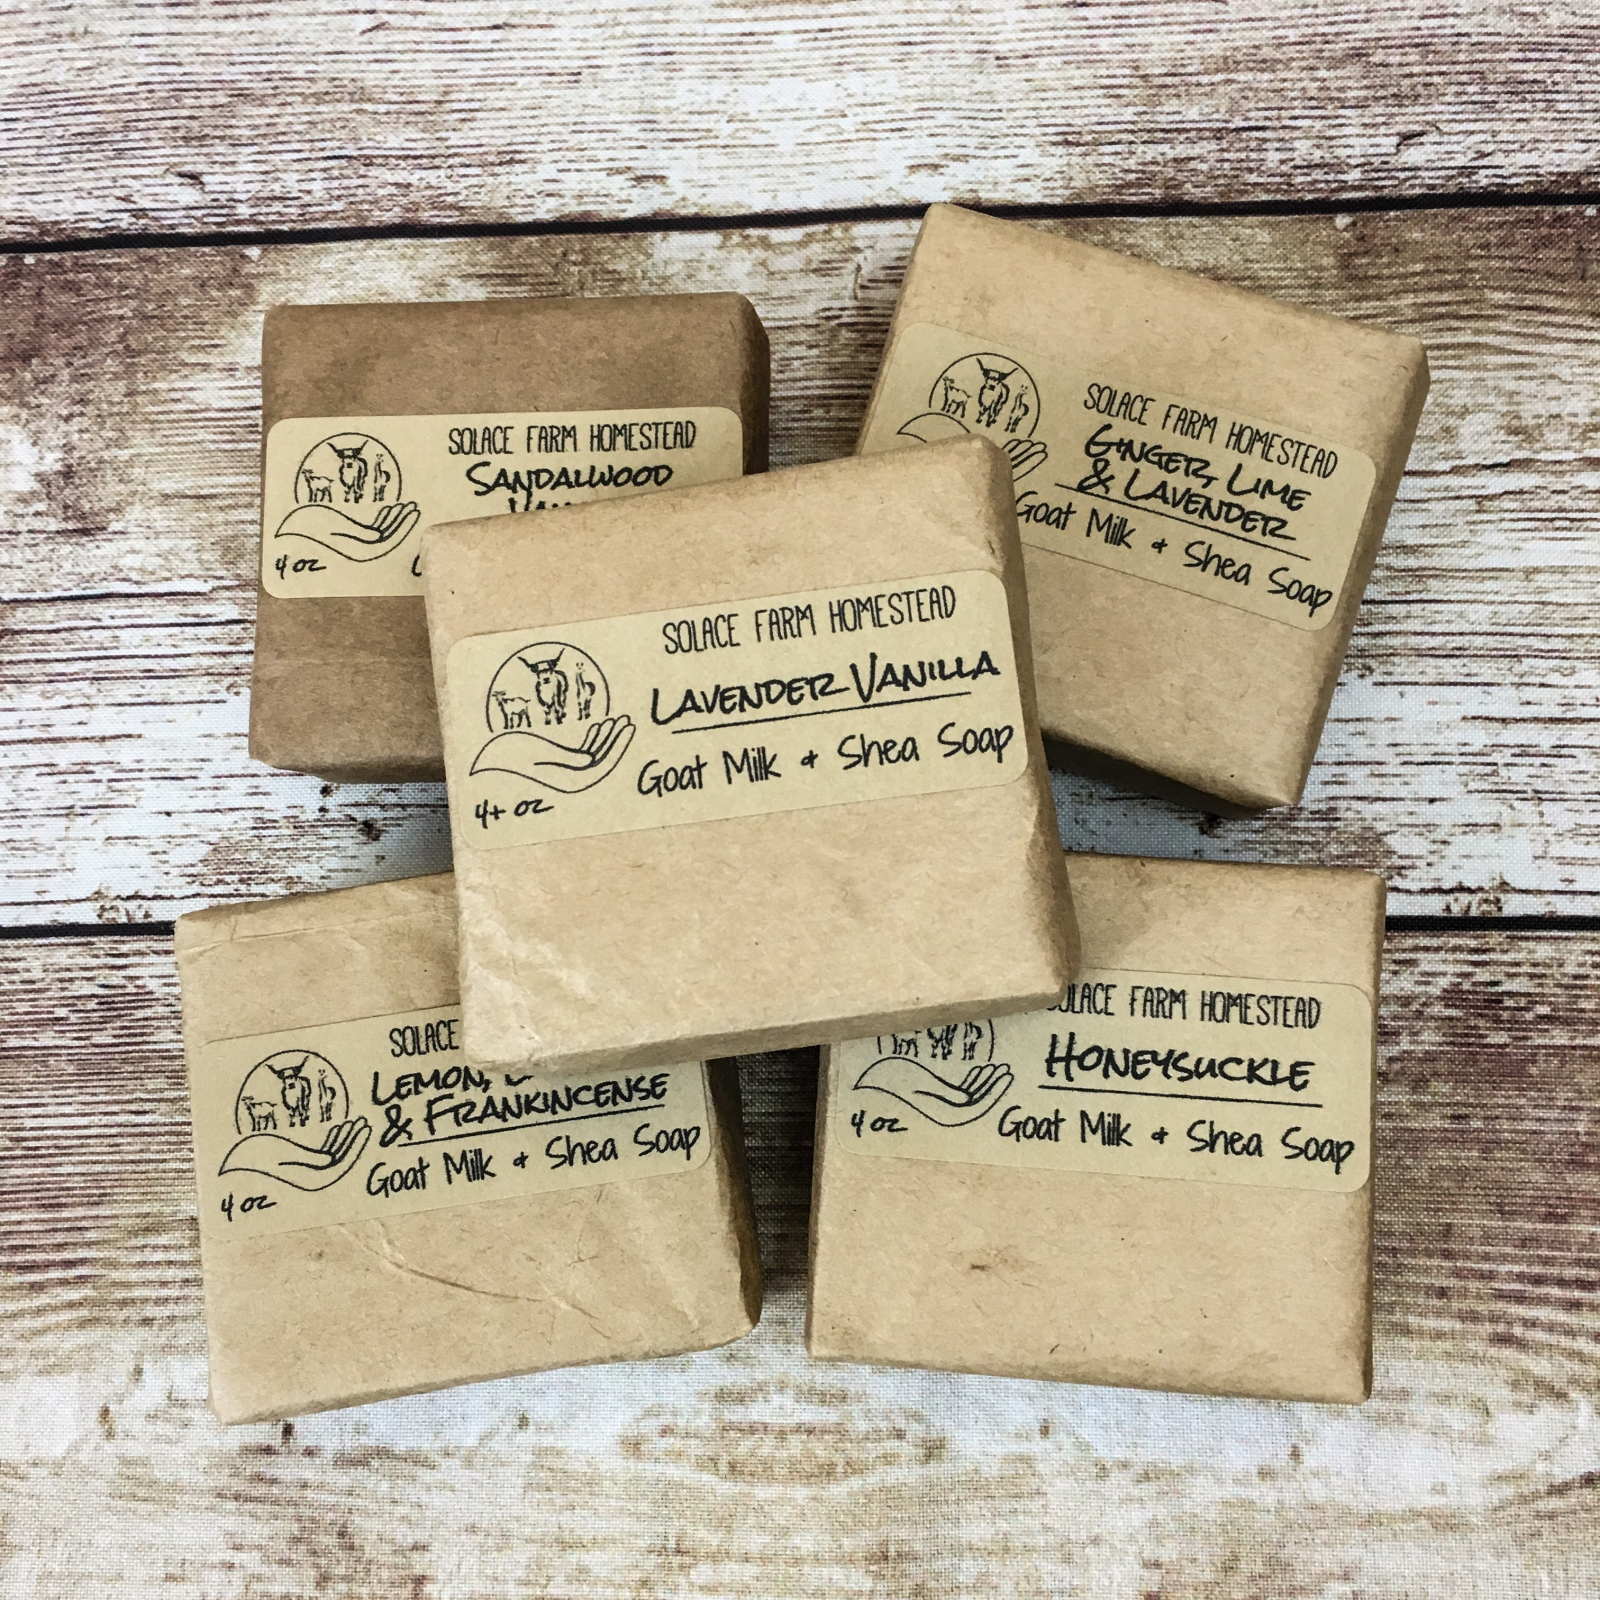 Handmade Goat Milk Soap, 5-Pack Variety